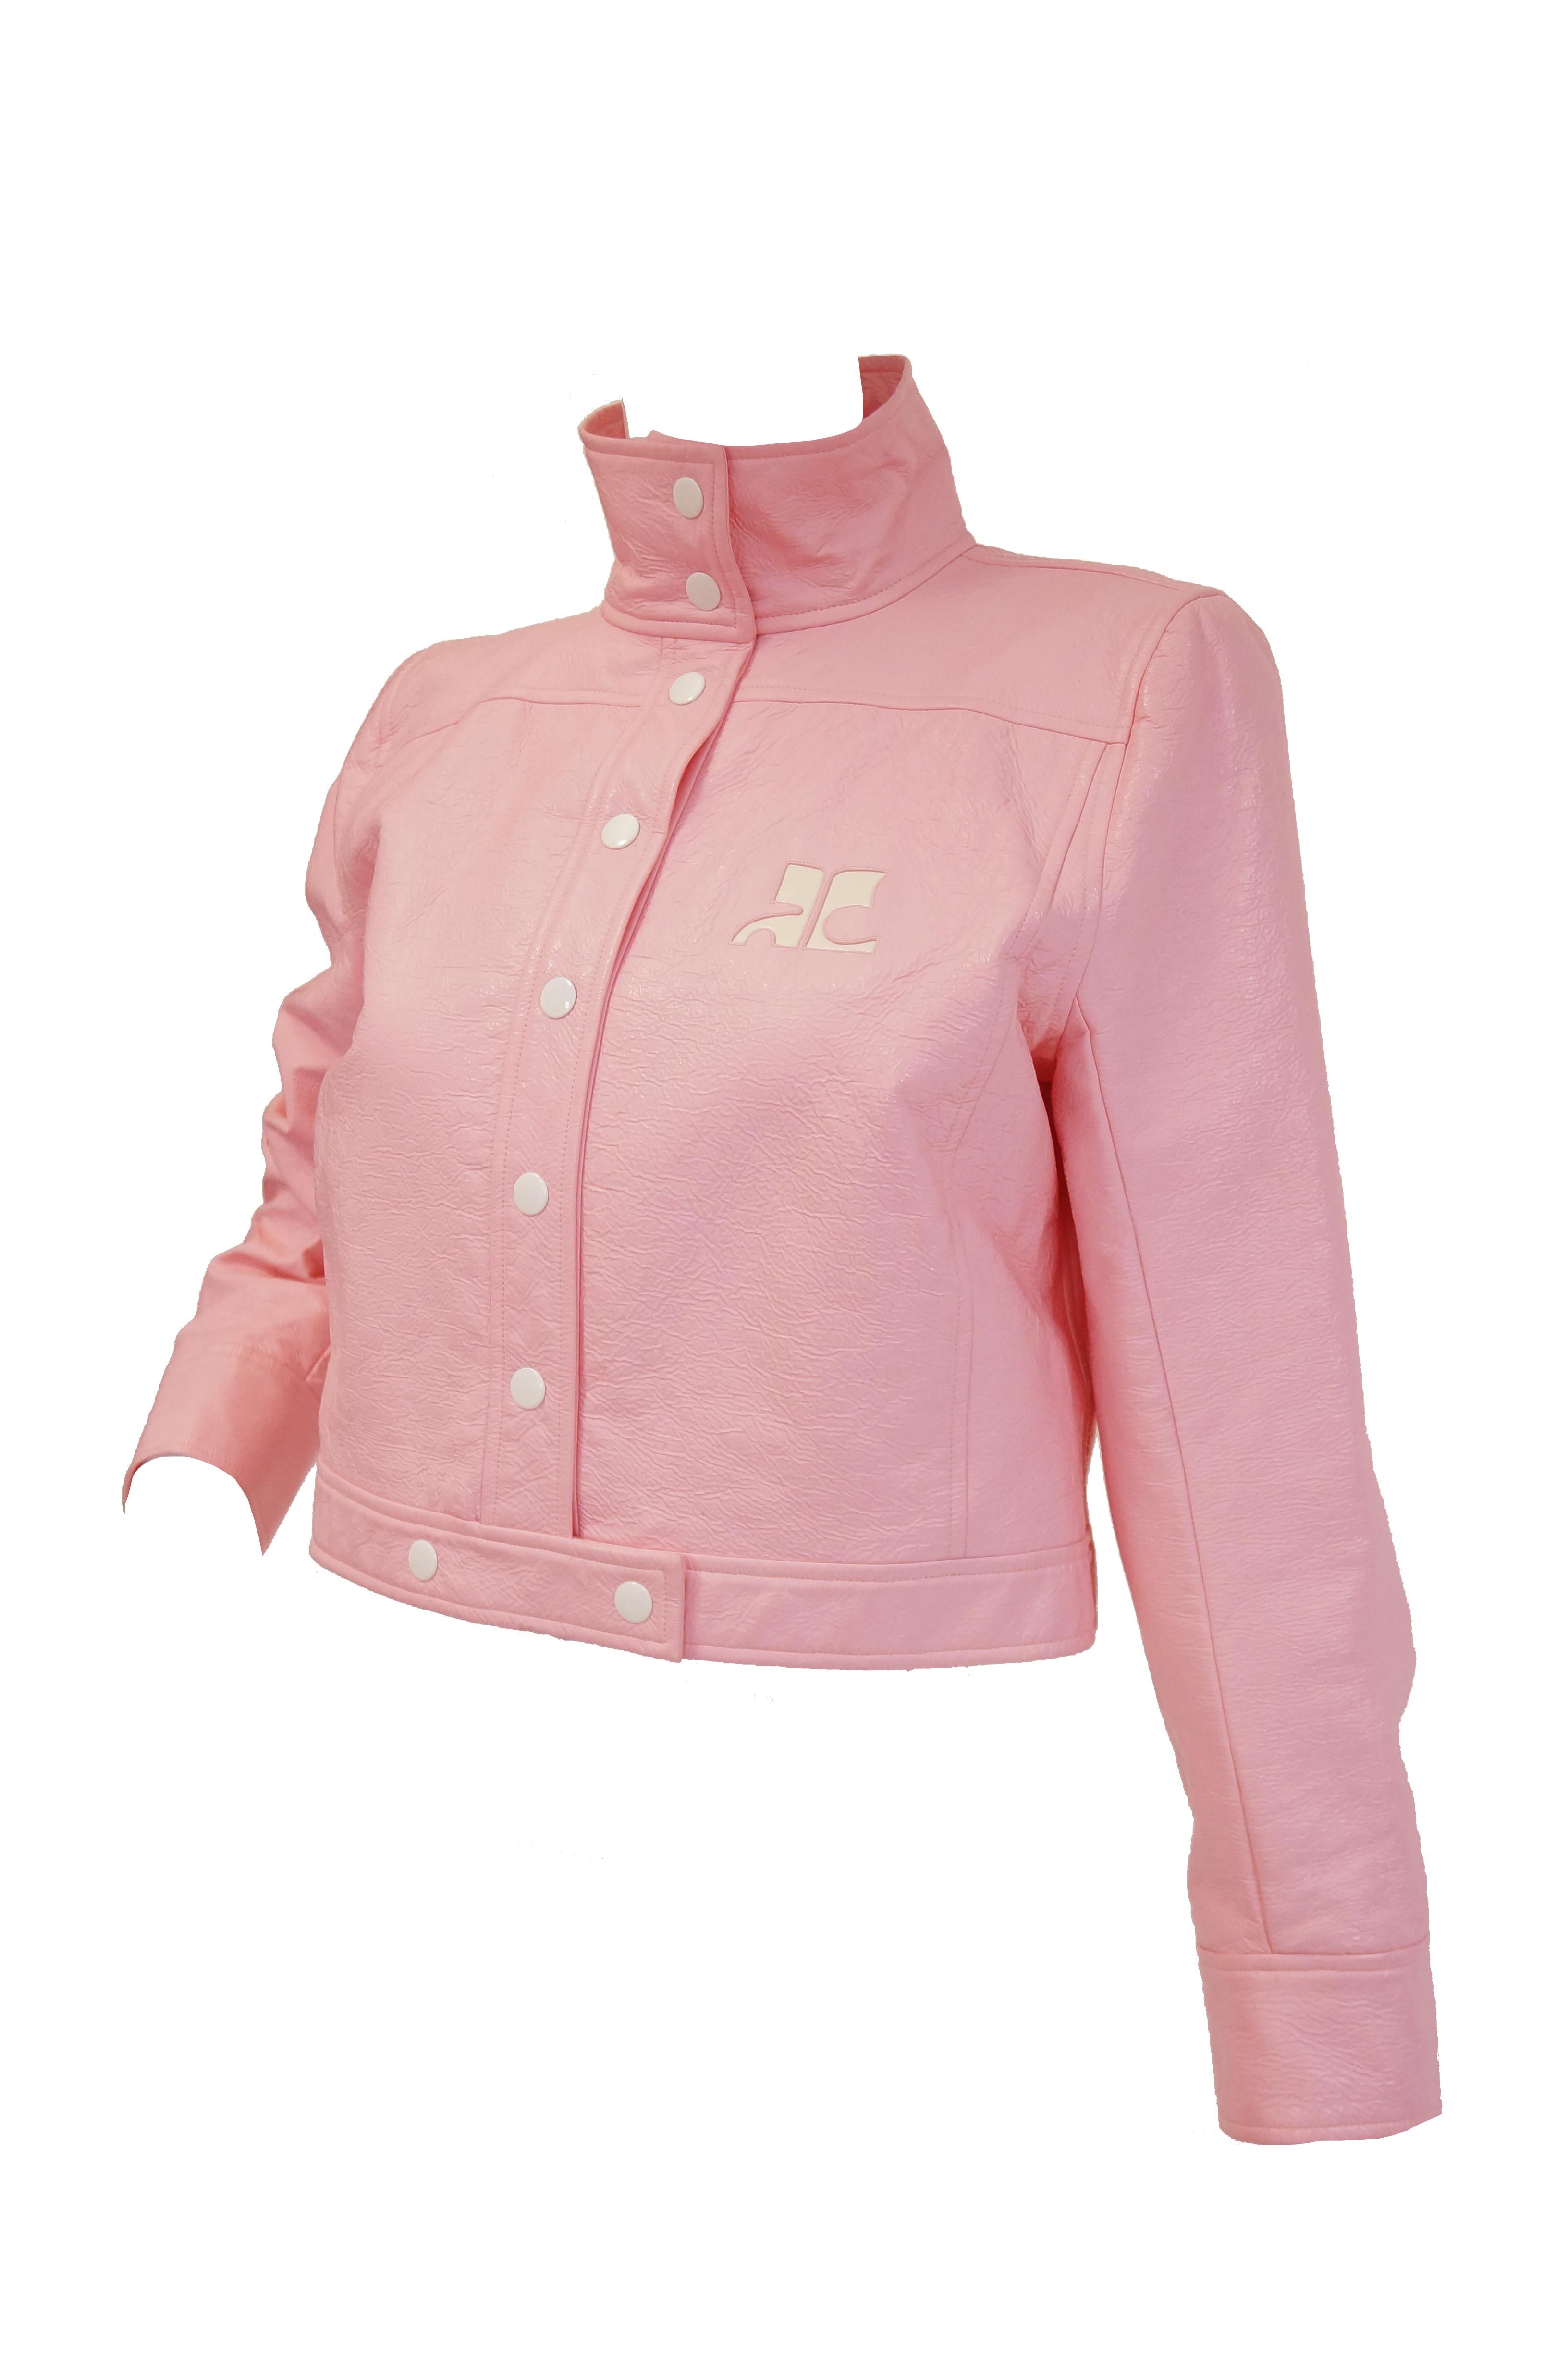 courreges pink jacket